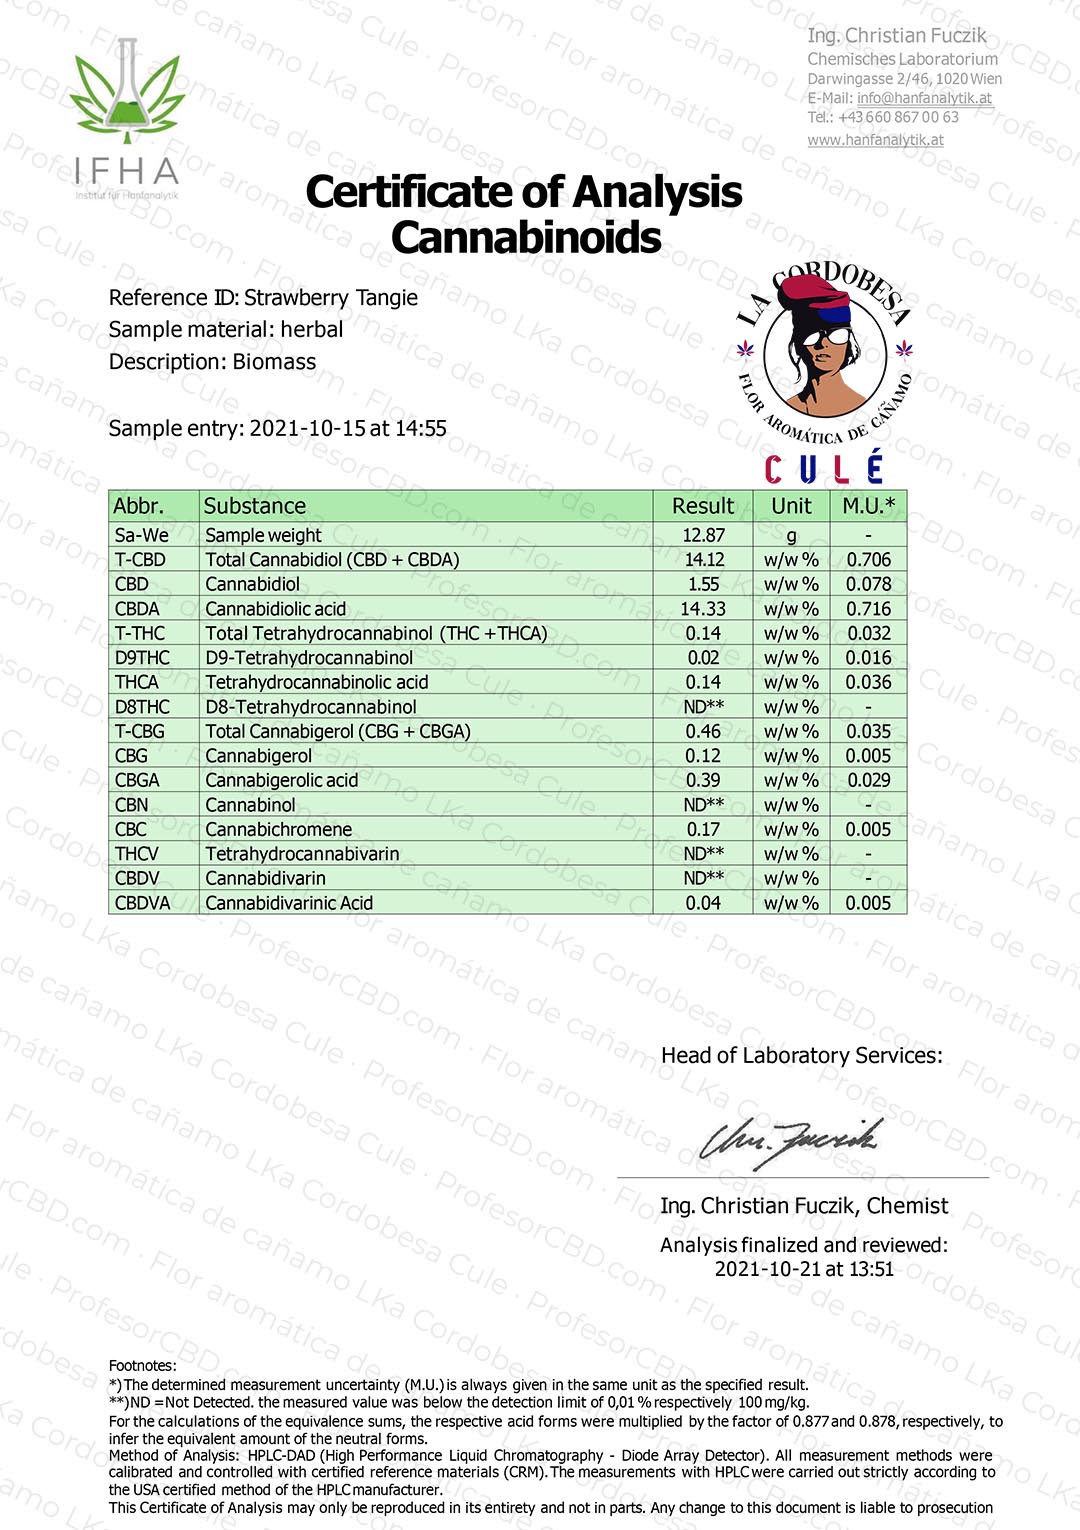 Cogollo de Flor Aromática de CBD al 14,12% · La Cordobesa Culé